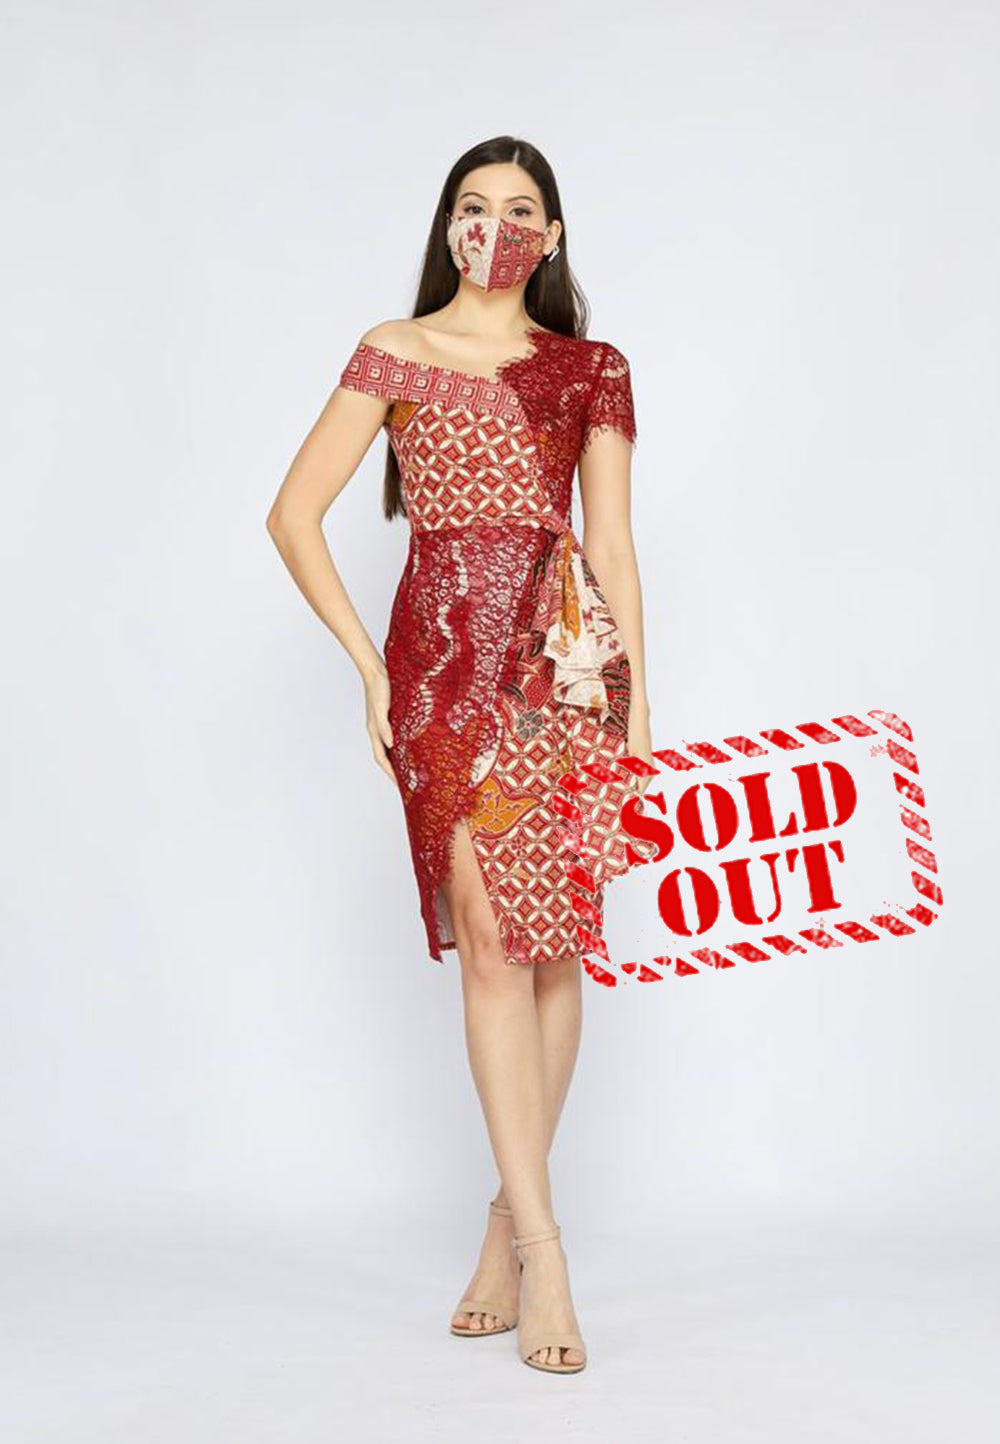 Dress Asymmetric Lace Batik